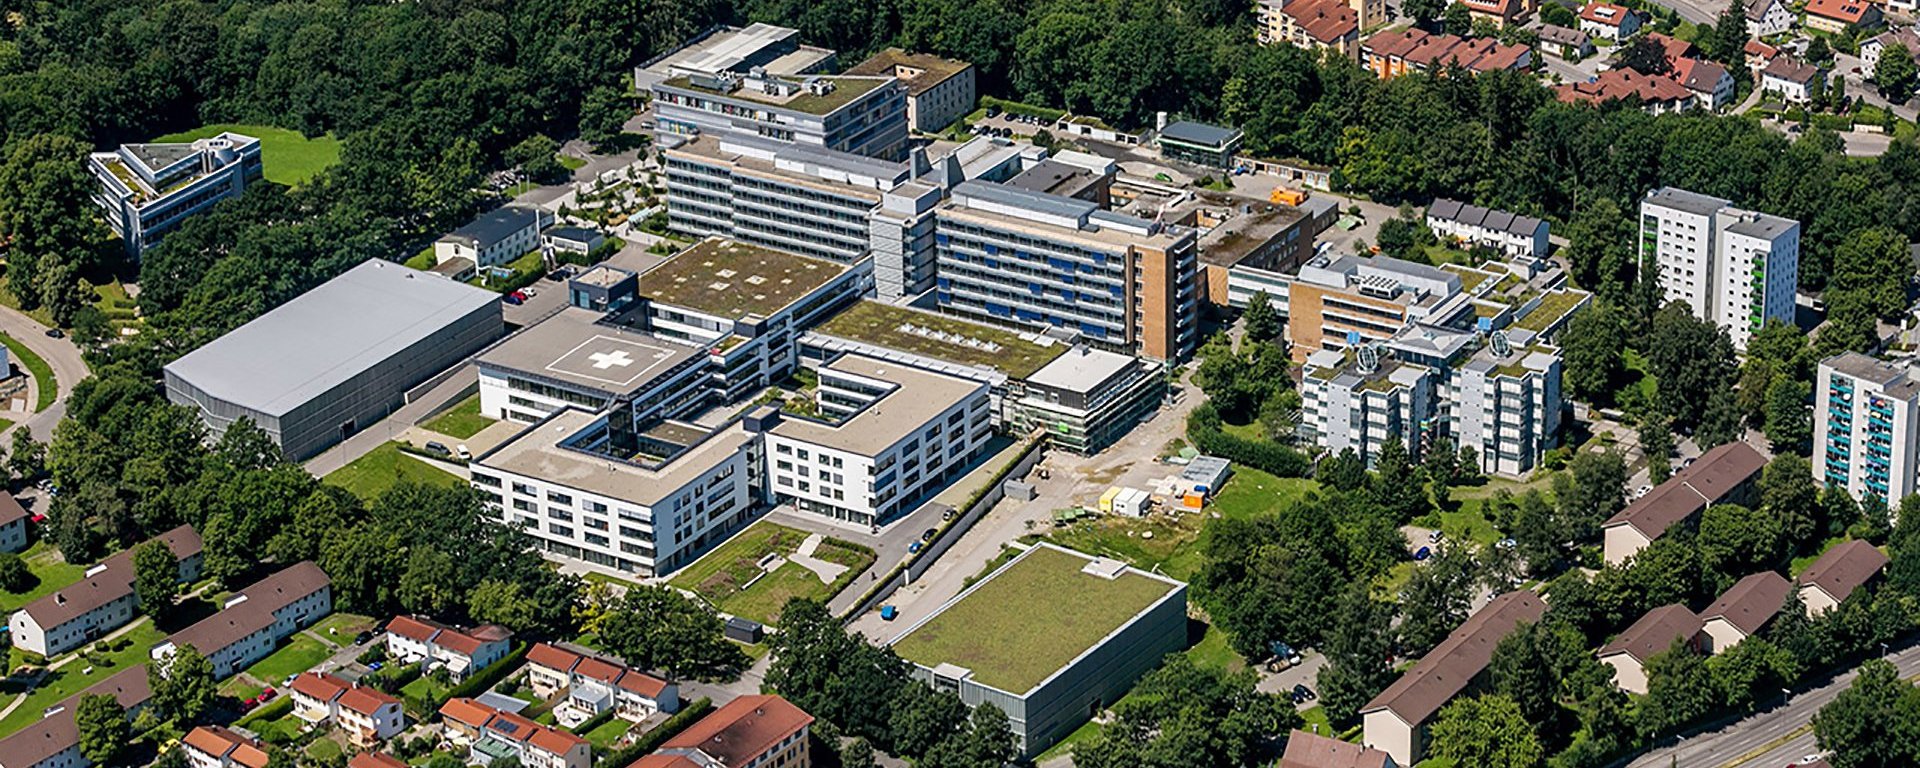 Der Klinikverbund Allgäu mit der Klinik am Standort Kempten im Allgäu